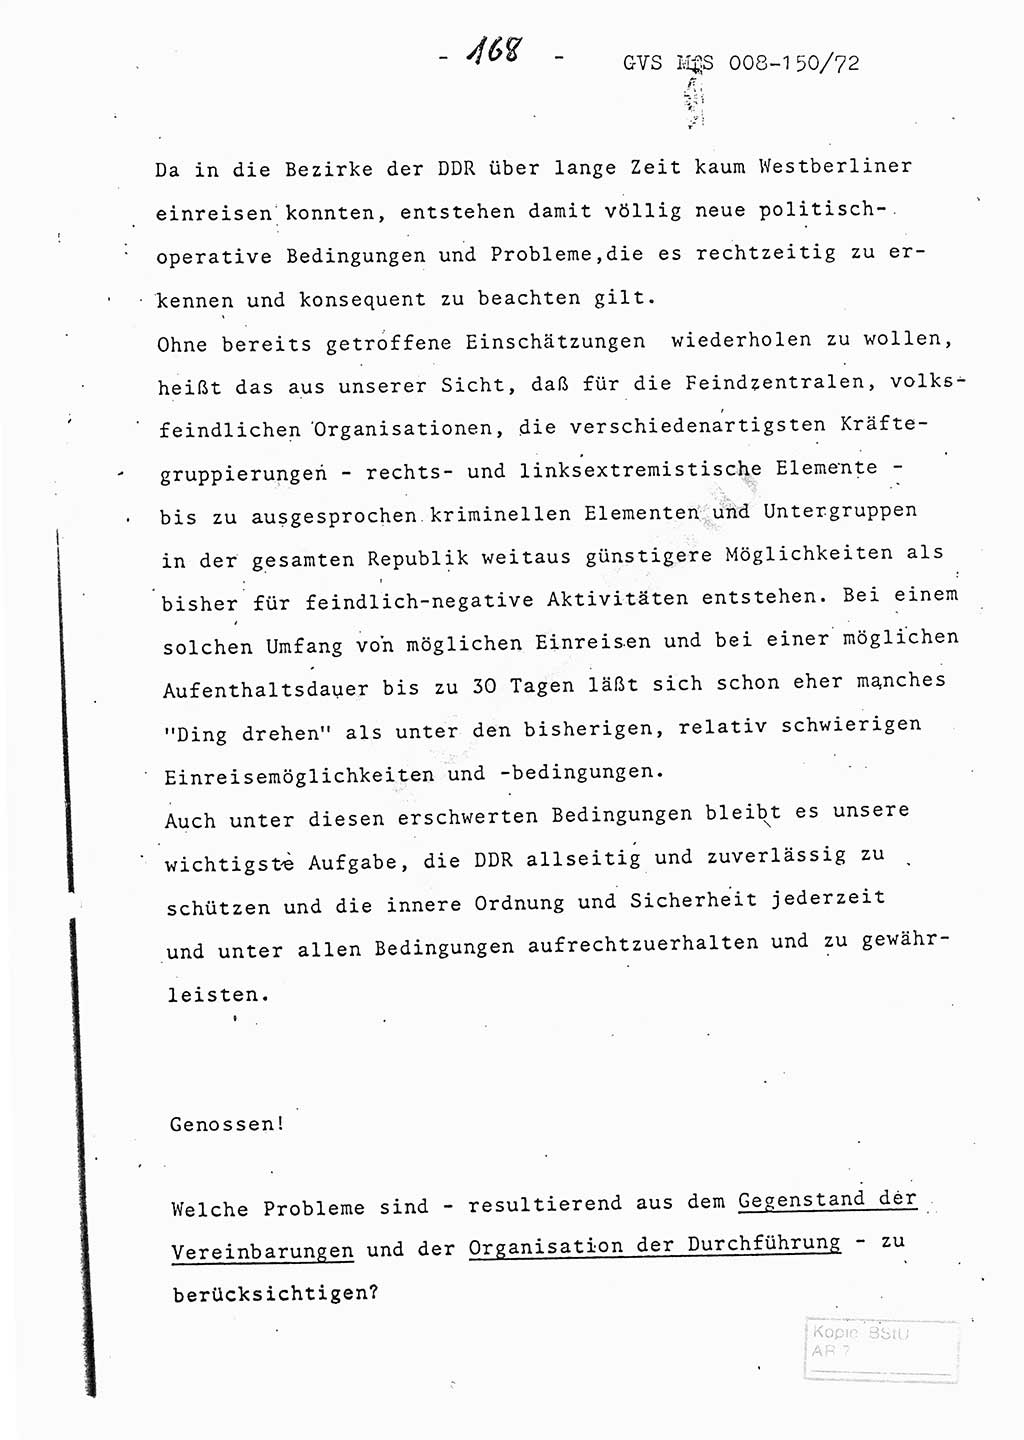 Referat (Entwurf) des Genossen Minister (Generaloberst Erich Mielke) auf der Dienstkonferenz 1972, Ministerium für Staatssicherheit (MfS) [Deutsche Demokratische Republik (DDR)], Der Minister, Geheime Verschlußsache (GVS) 008-150/72, Berlin 25.2.1972, Seite 168 (Ref. Entw. DK MfS DDR Min. GVS 008-150/72 1972, S. 168)